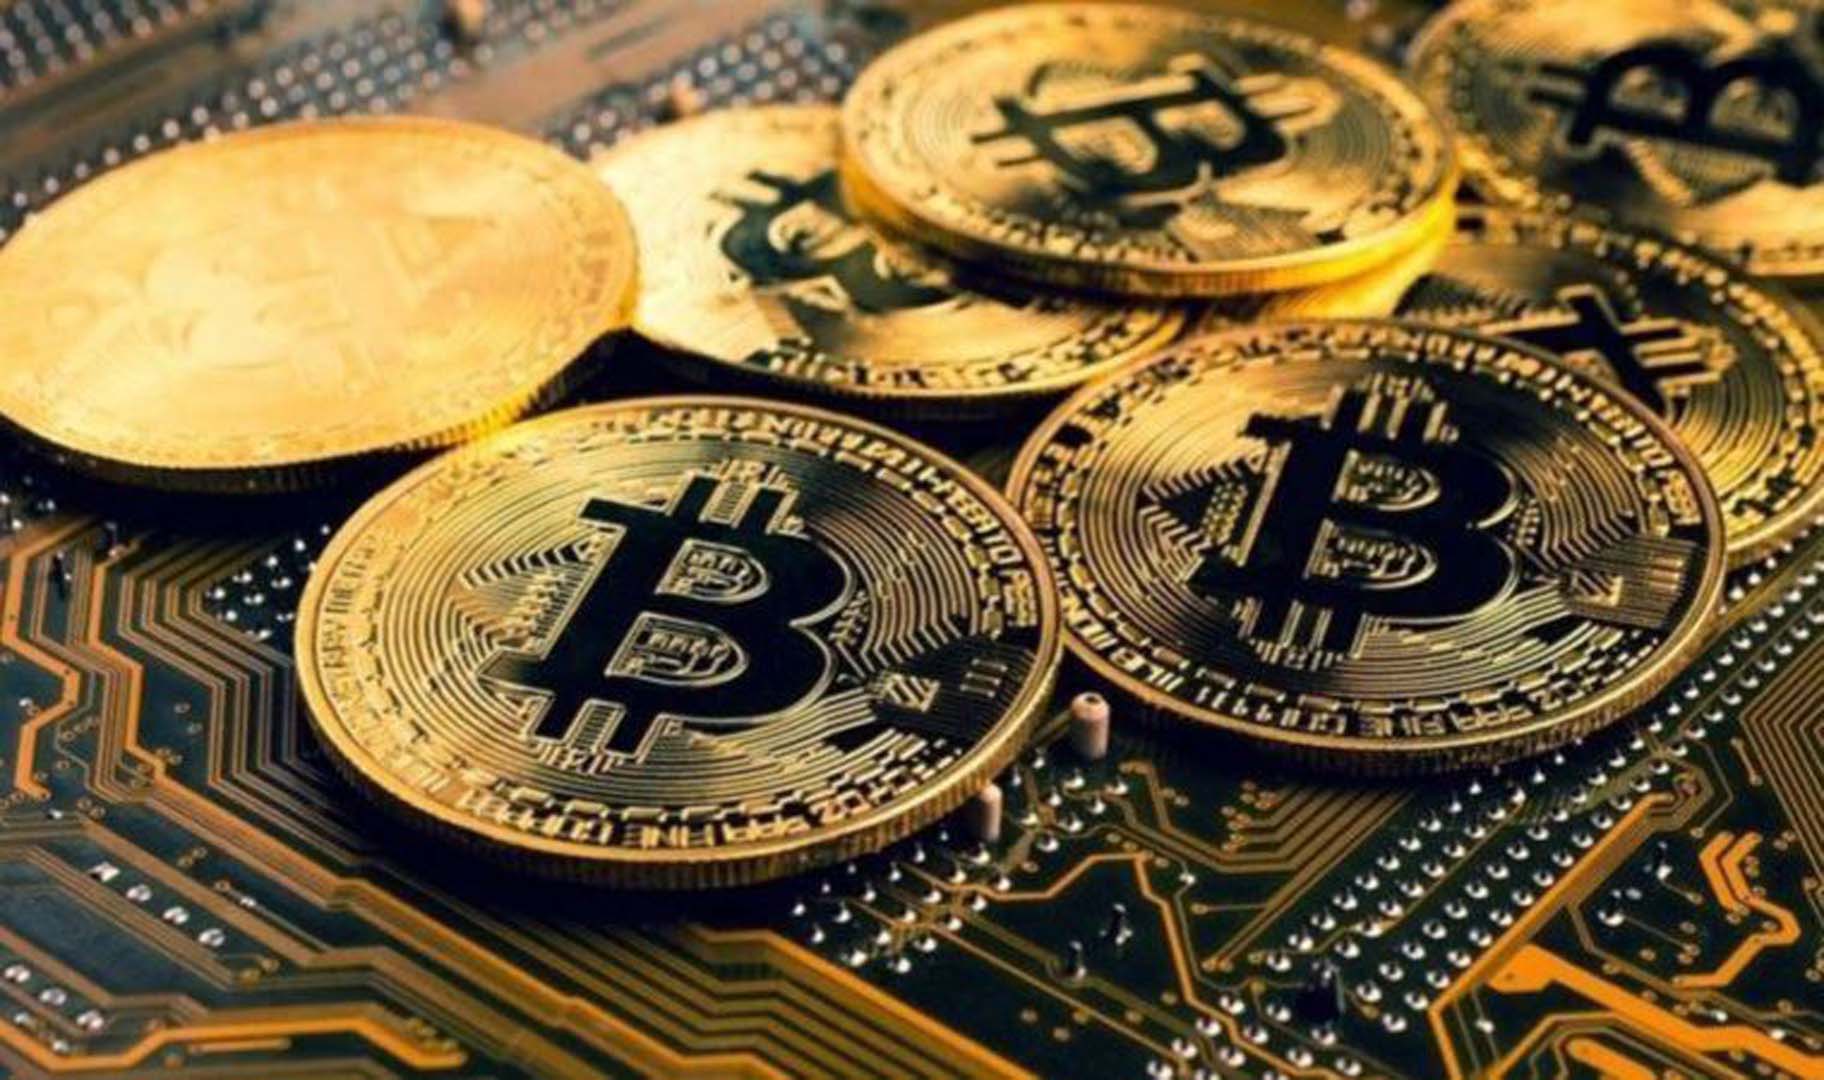 Kripto para piyasasında deprem! Bitcoin dibi gördü!